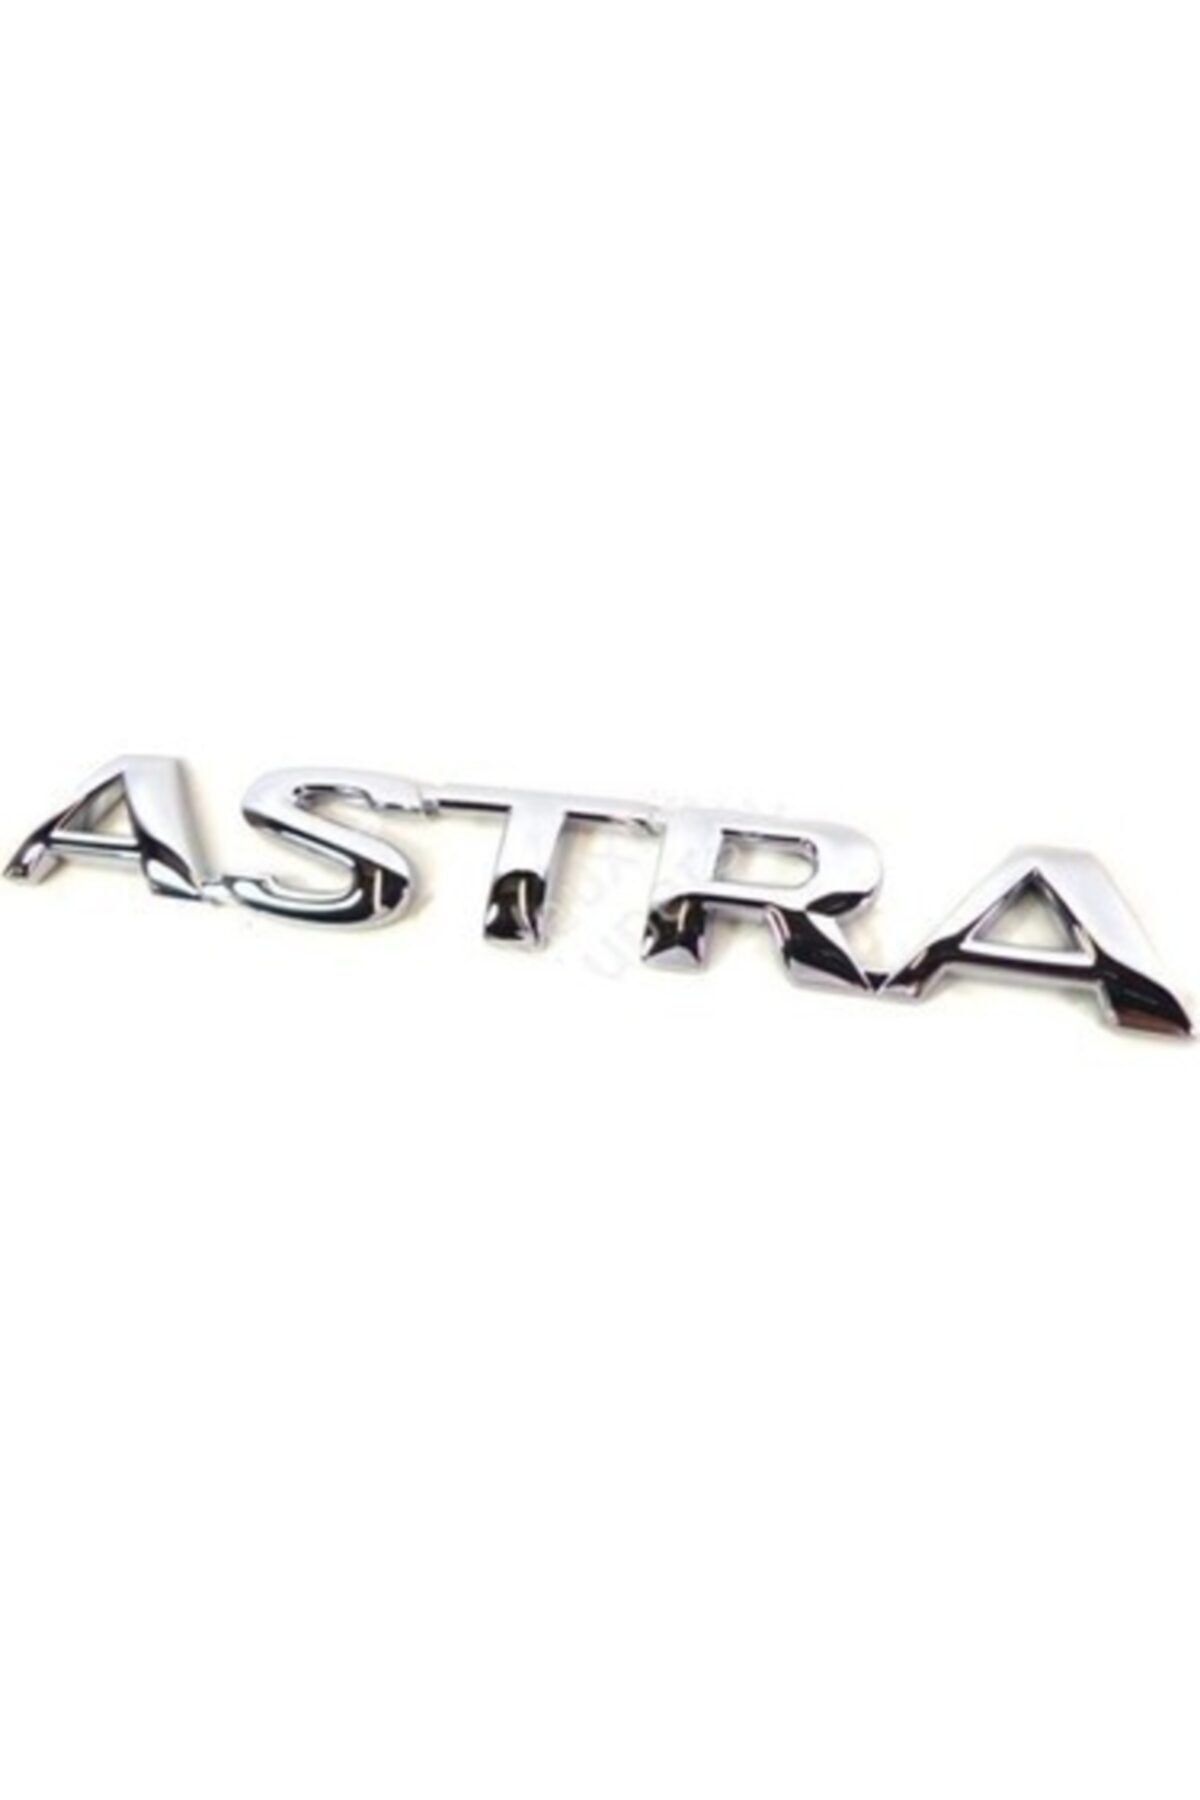 OEM Otomustafa Opel Astra Uyumlu Astra Bağaj Yazısı